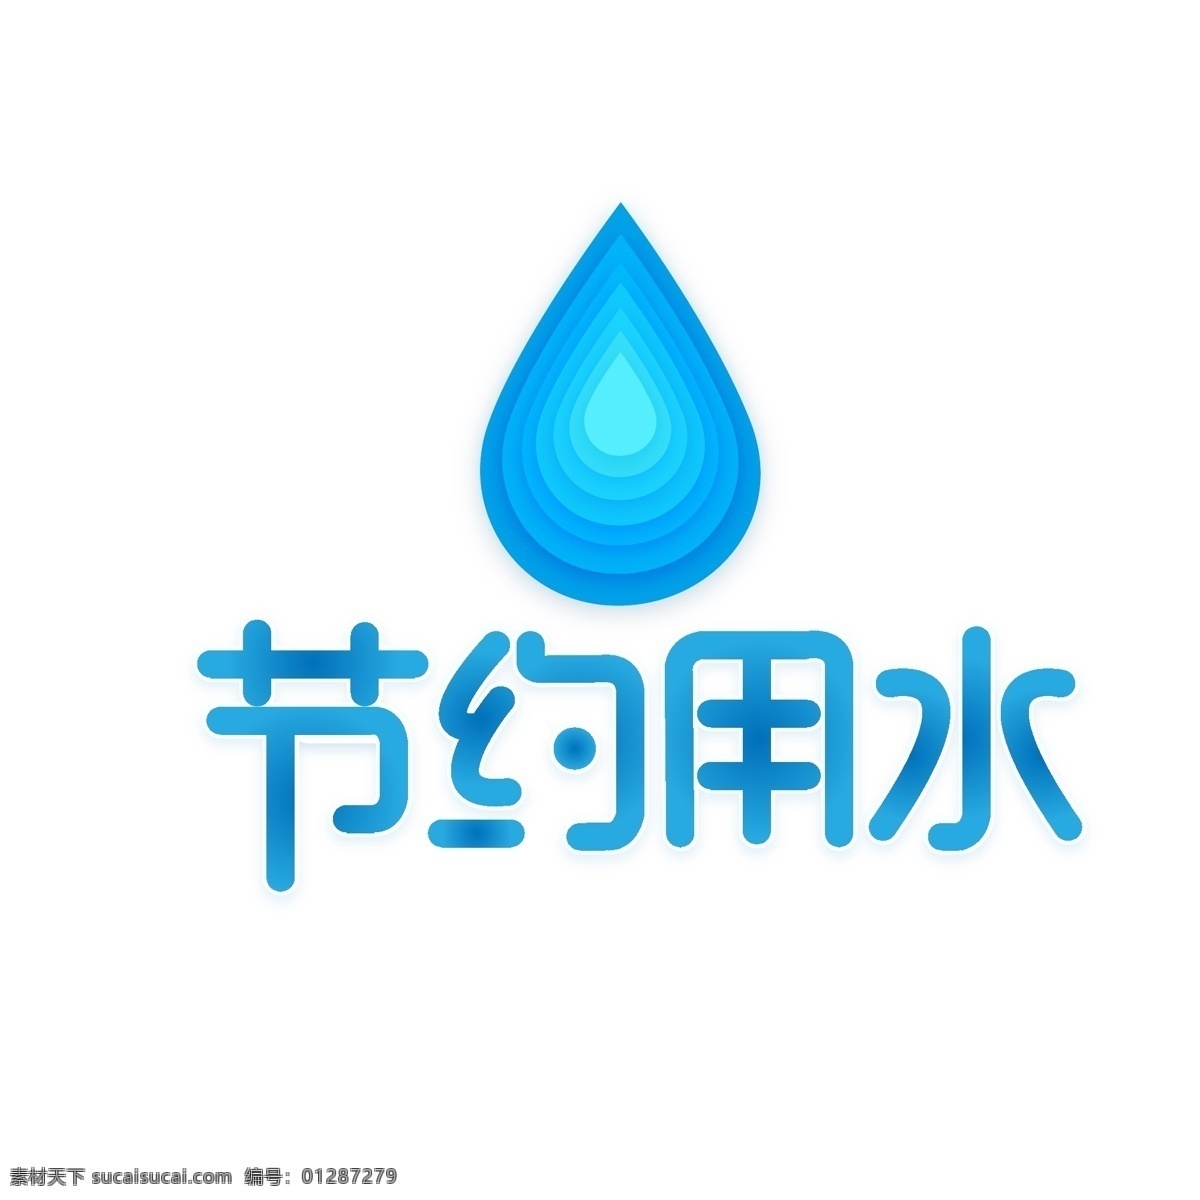 温馨 提示 节约 用水 字体 节约用水 温馨提示 水滴 水滴形状 温馨提示字体 蓝色提示